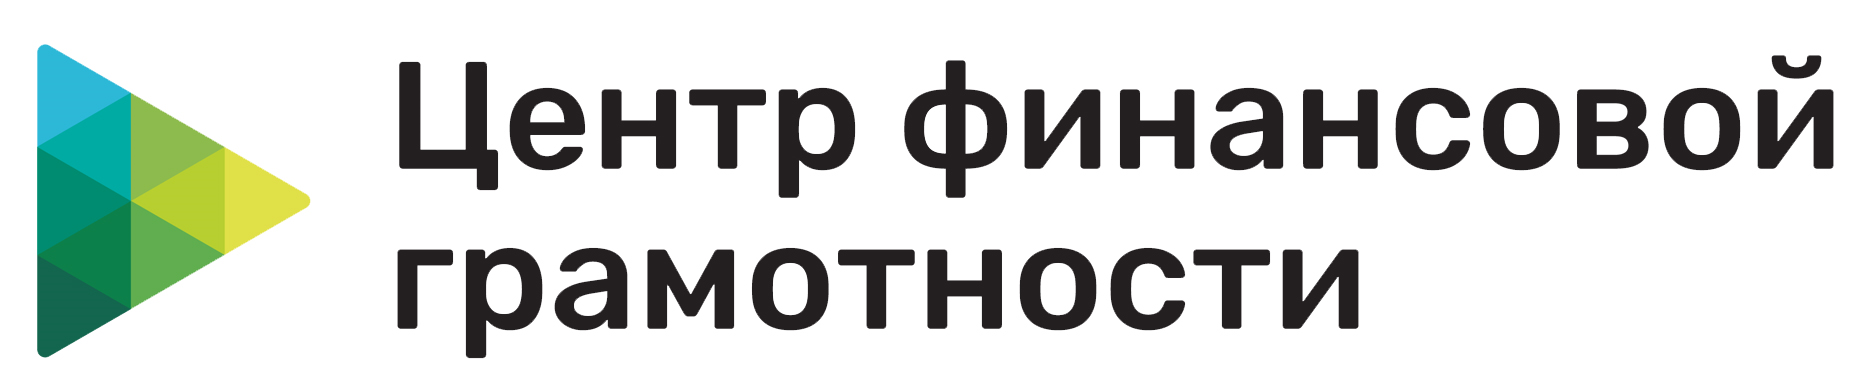 Логотип Центра Финансовой грамотности